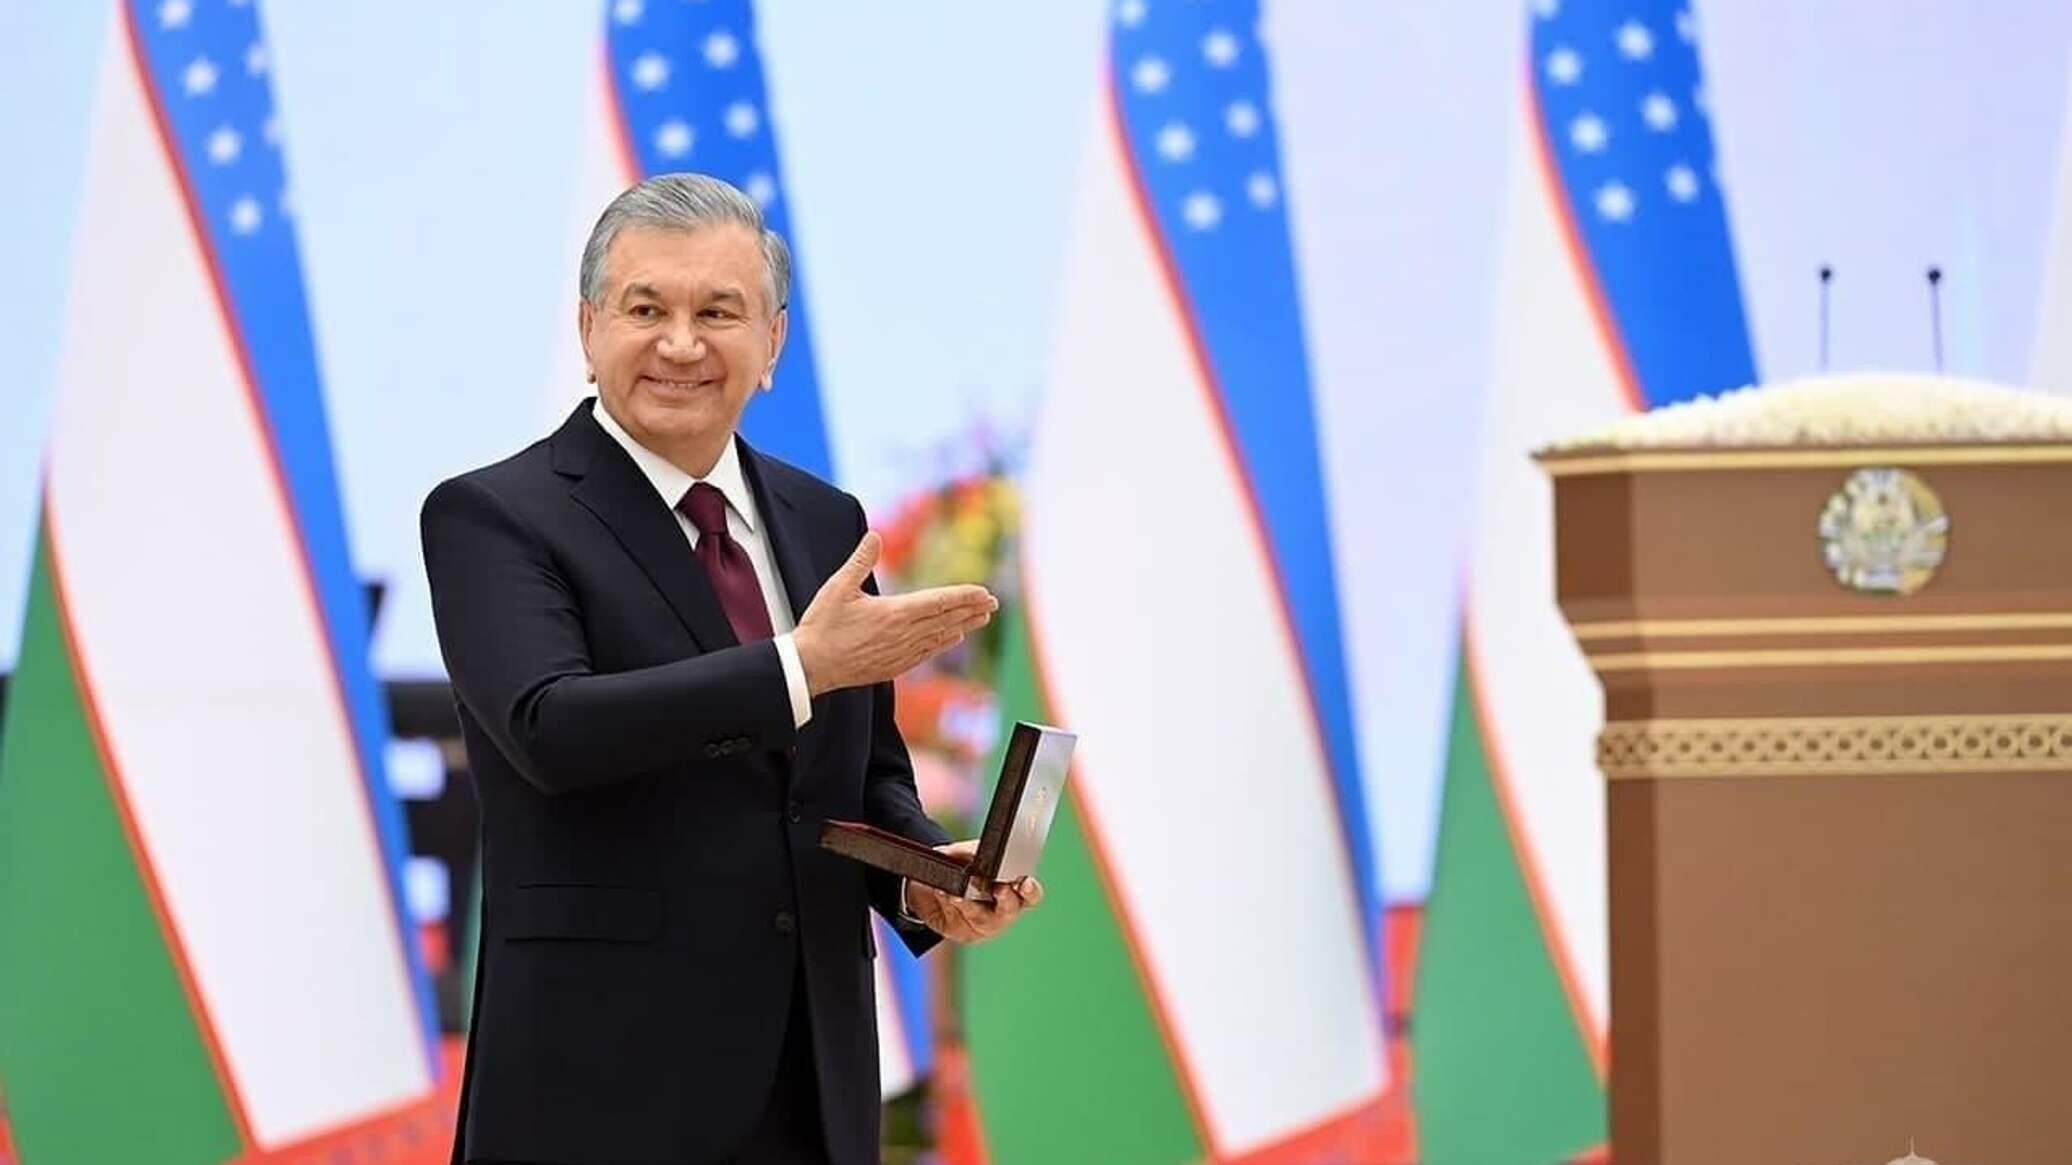 Президент наградил 8 иностранных инвесторов в связи с годовщиной независимости Узбекистана